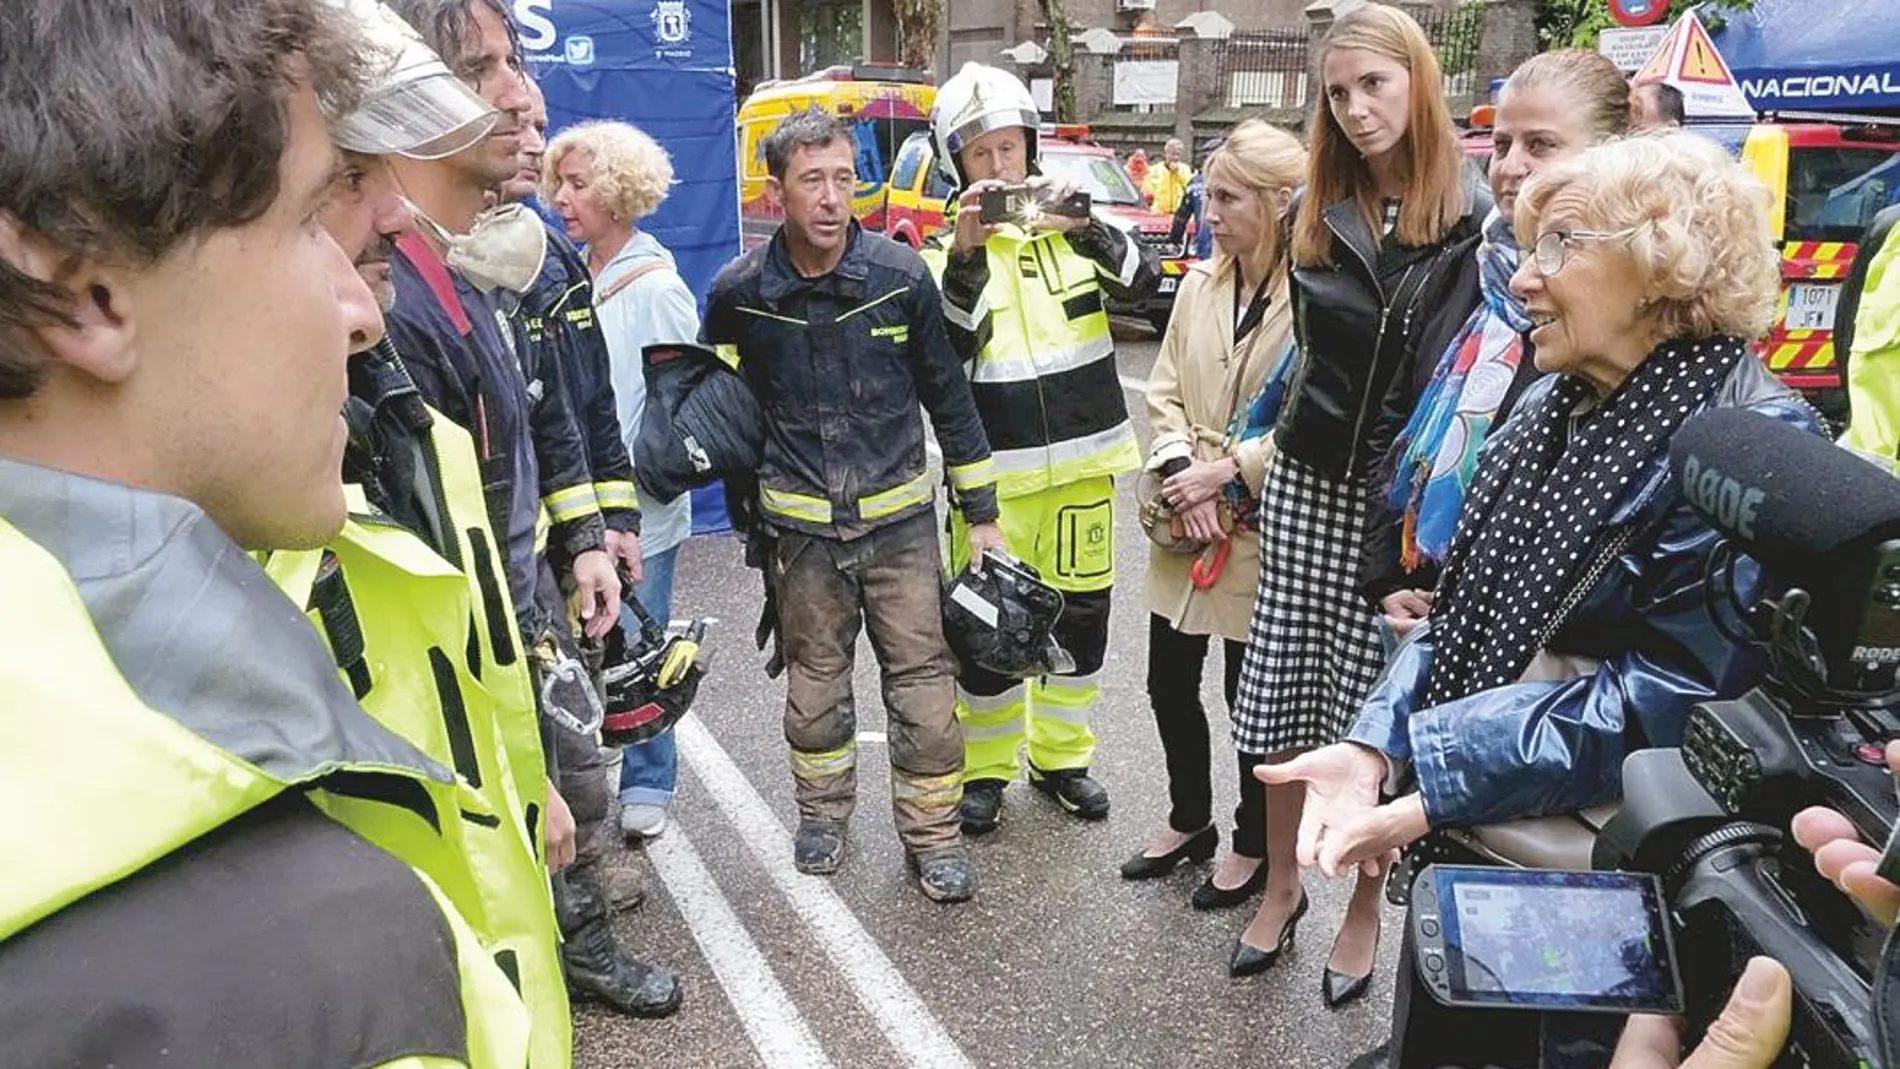 La alcaldesa agradeció ayer, tras ser hallado el cuerpo del segundo desaparecido en el derrumbe de Chamberí, la enorme e importante labor de los bomberos en los trabajos de desescombro del edificio, clave en la prevención de mayores pérdidas